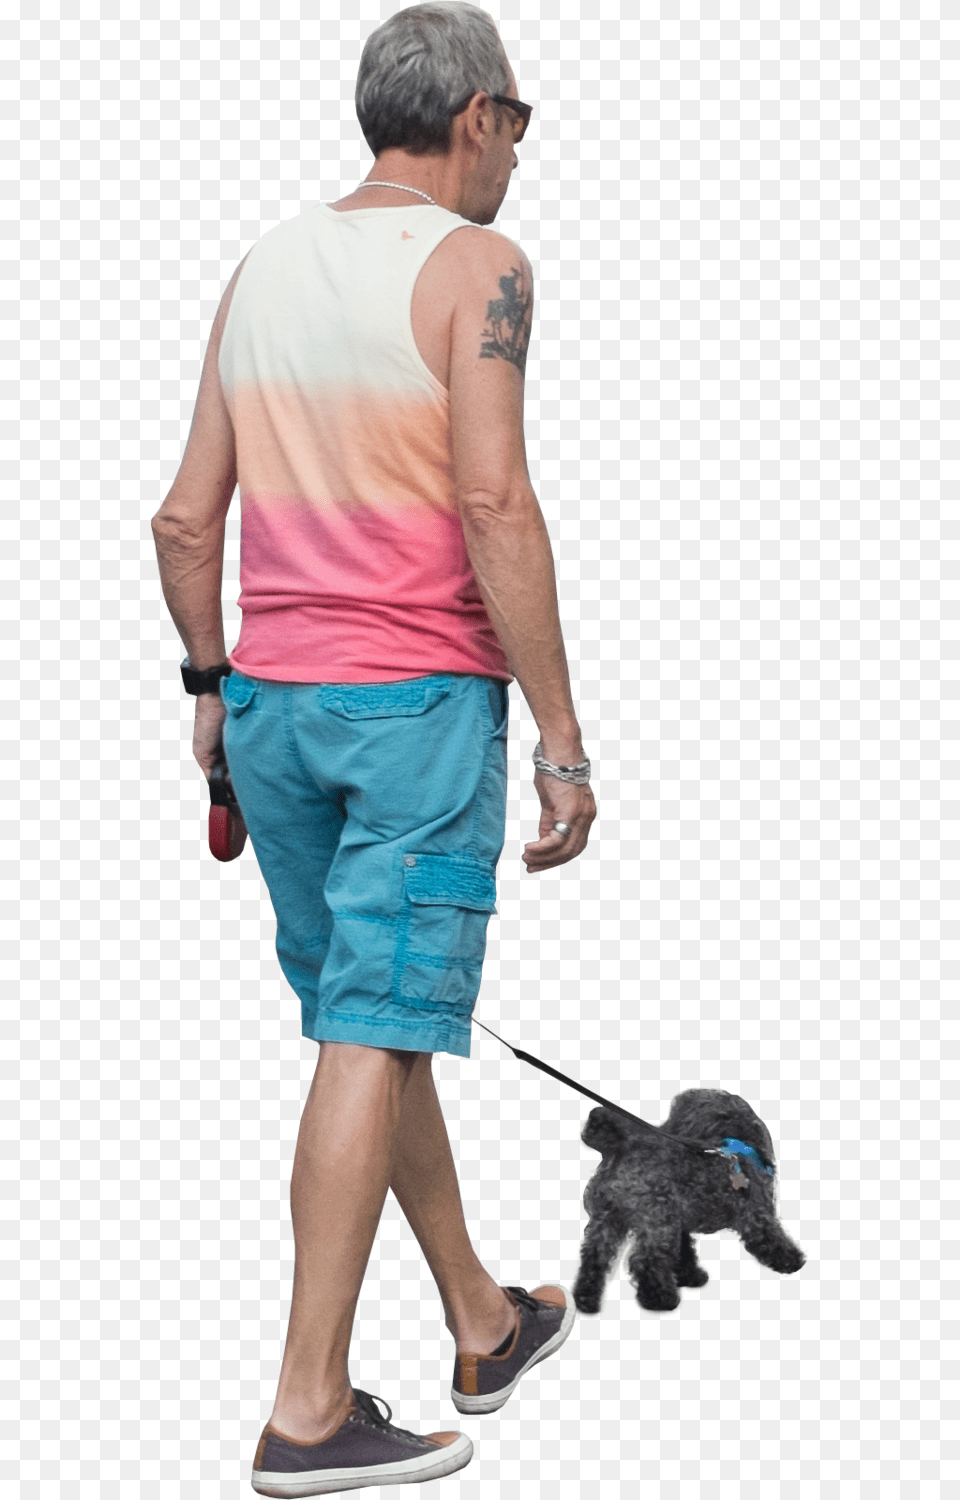 Dog Walking Man Walking Dog, Person, Back, Body Part, Clothing Free Png